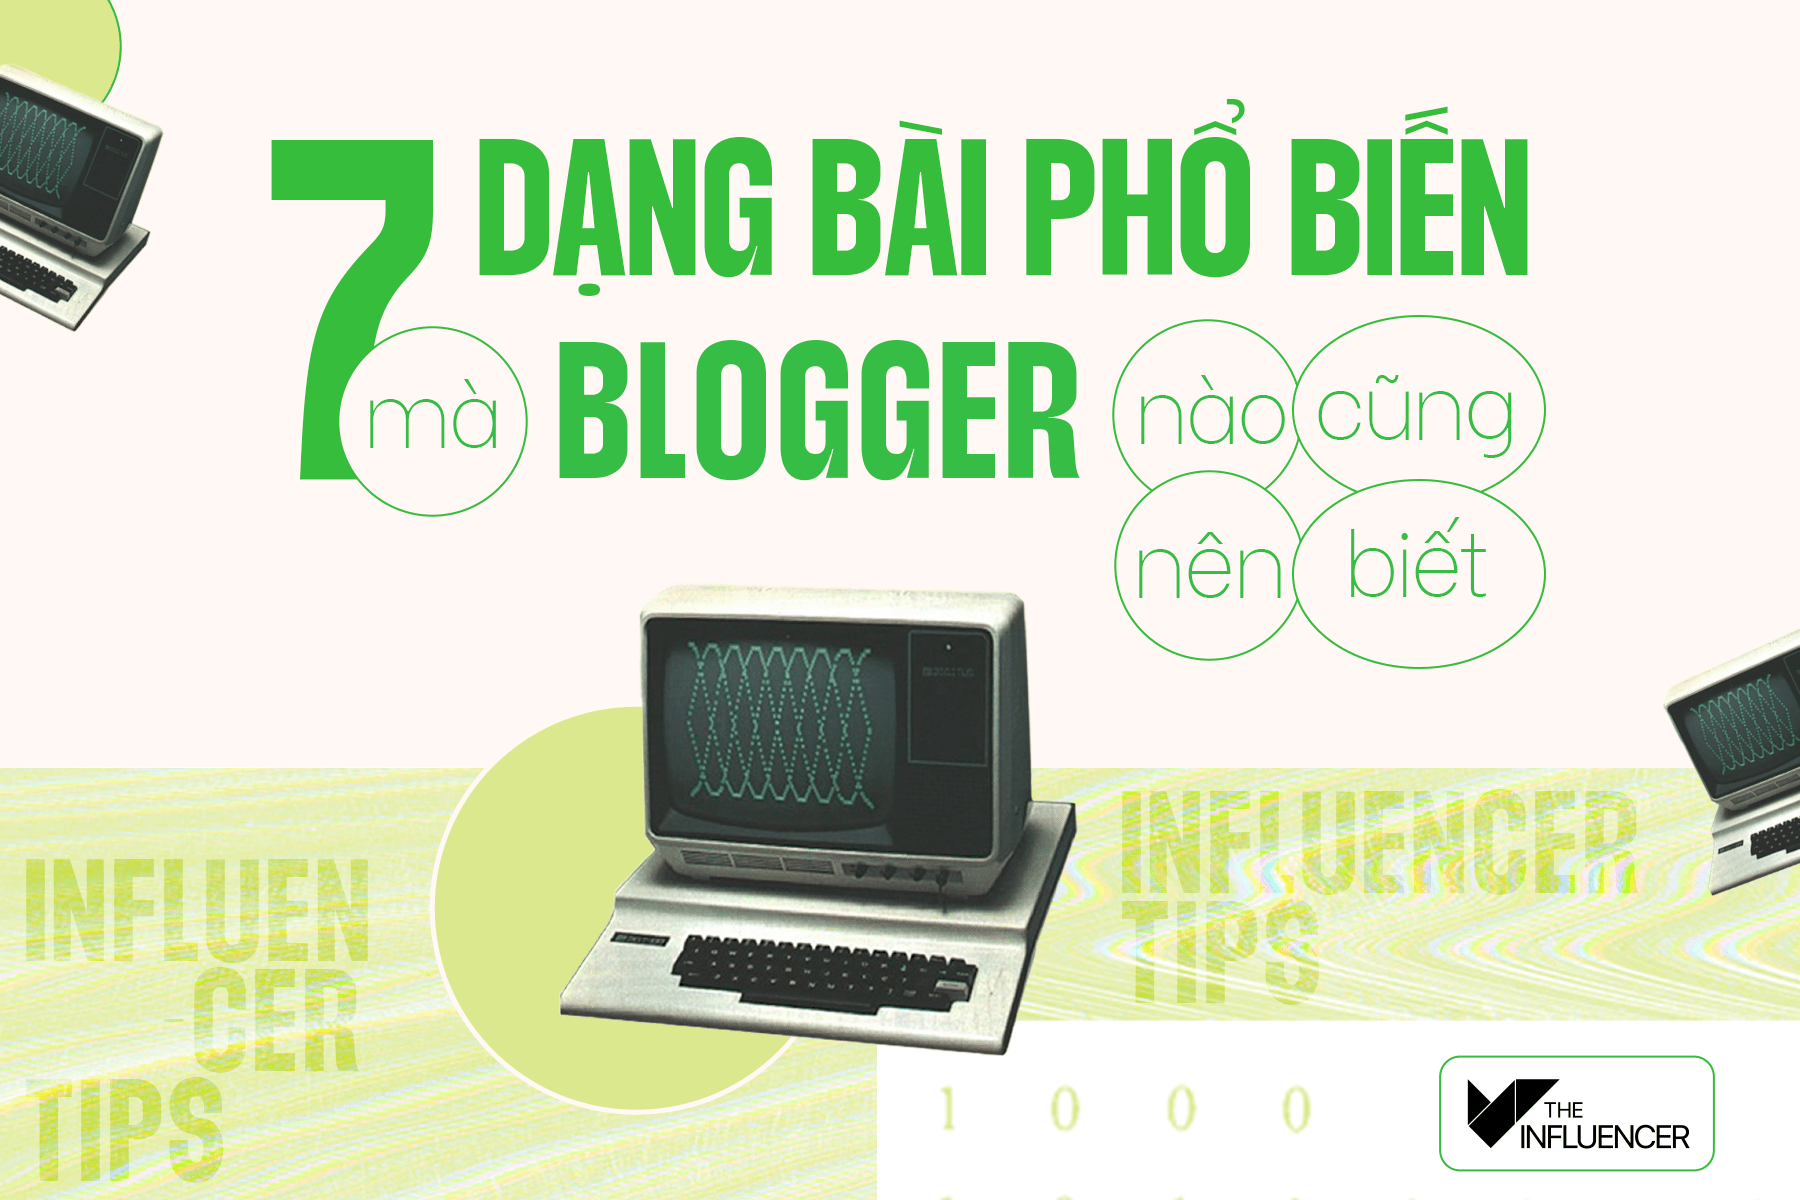 #InfluencerTips: 7 dạng bài phổ biến mà blogger nào cũng nên biết